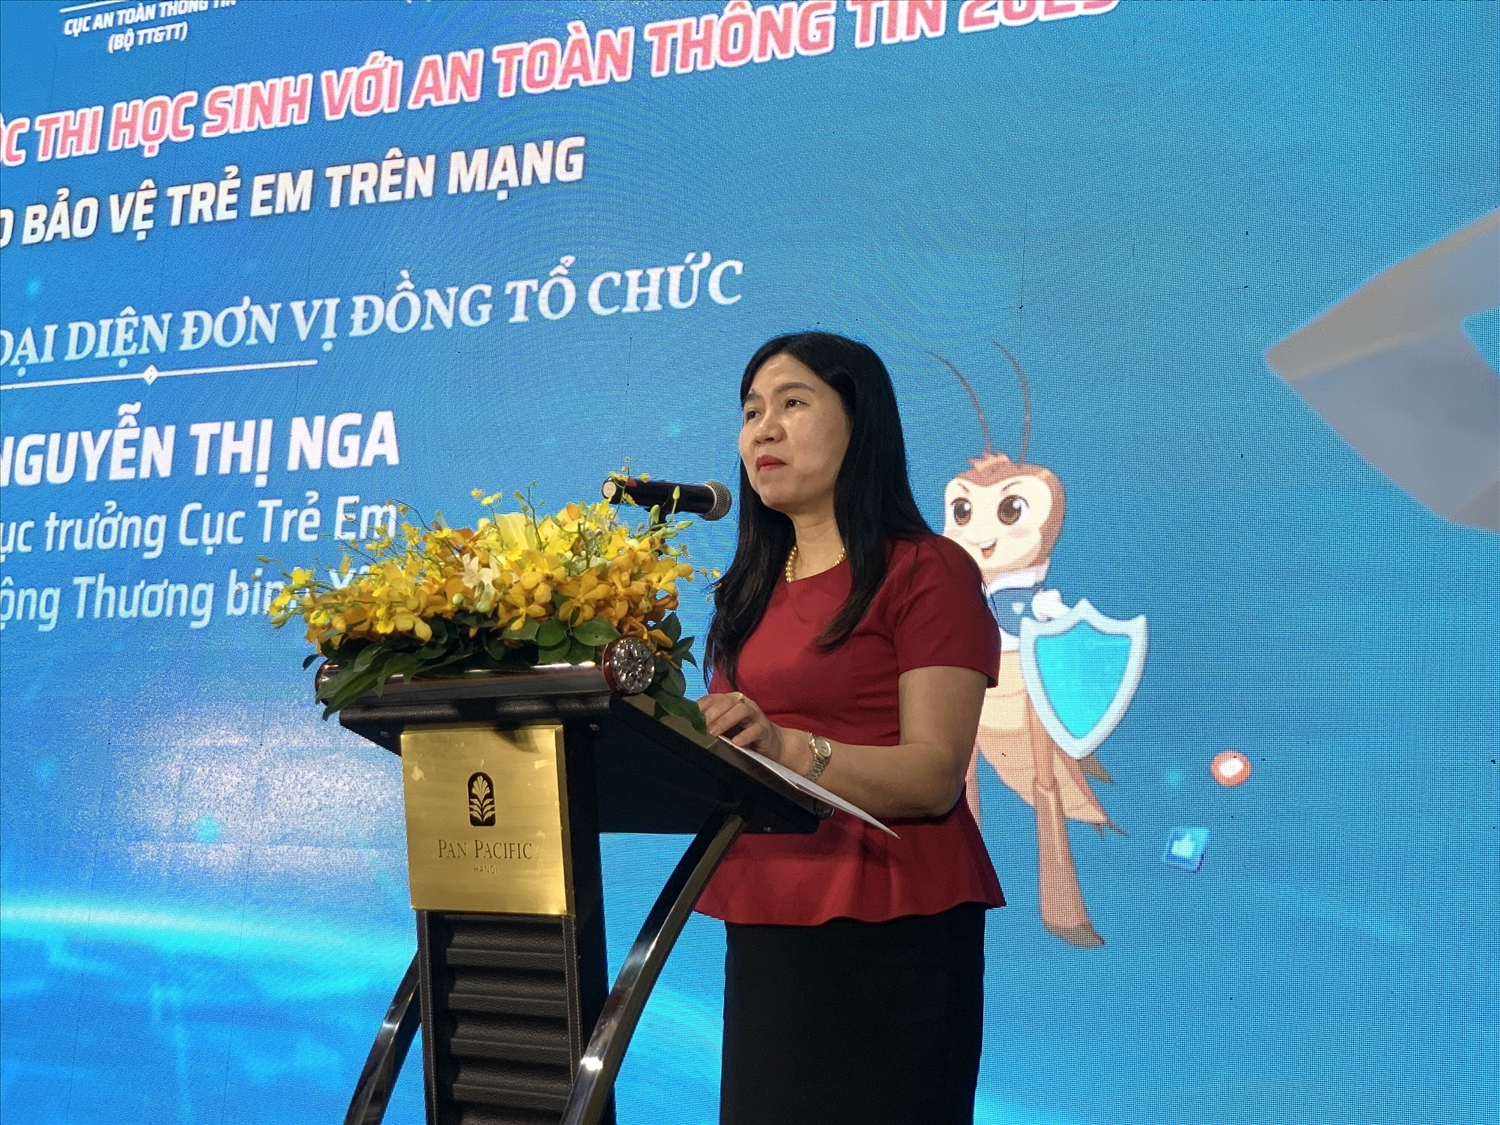 Bà Nguyễn Thị Nga, Phó Cục trưởng Cục Trẻ em đánh giá cao vai trò kết nối của VNISA để tổ chức cuộc thi